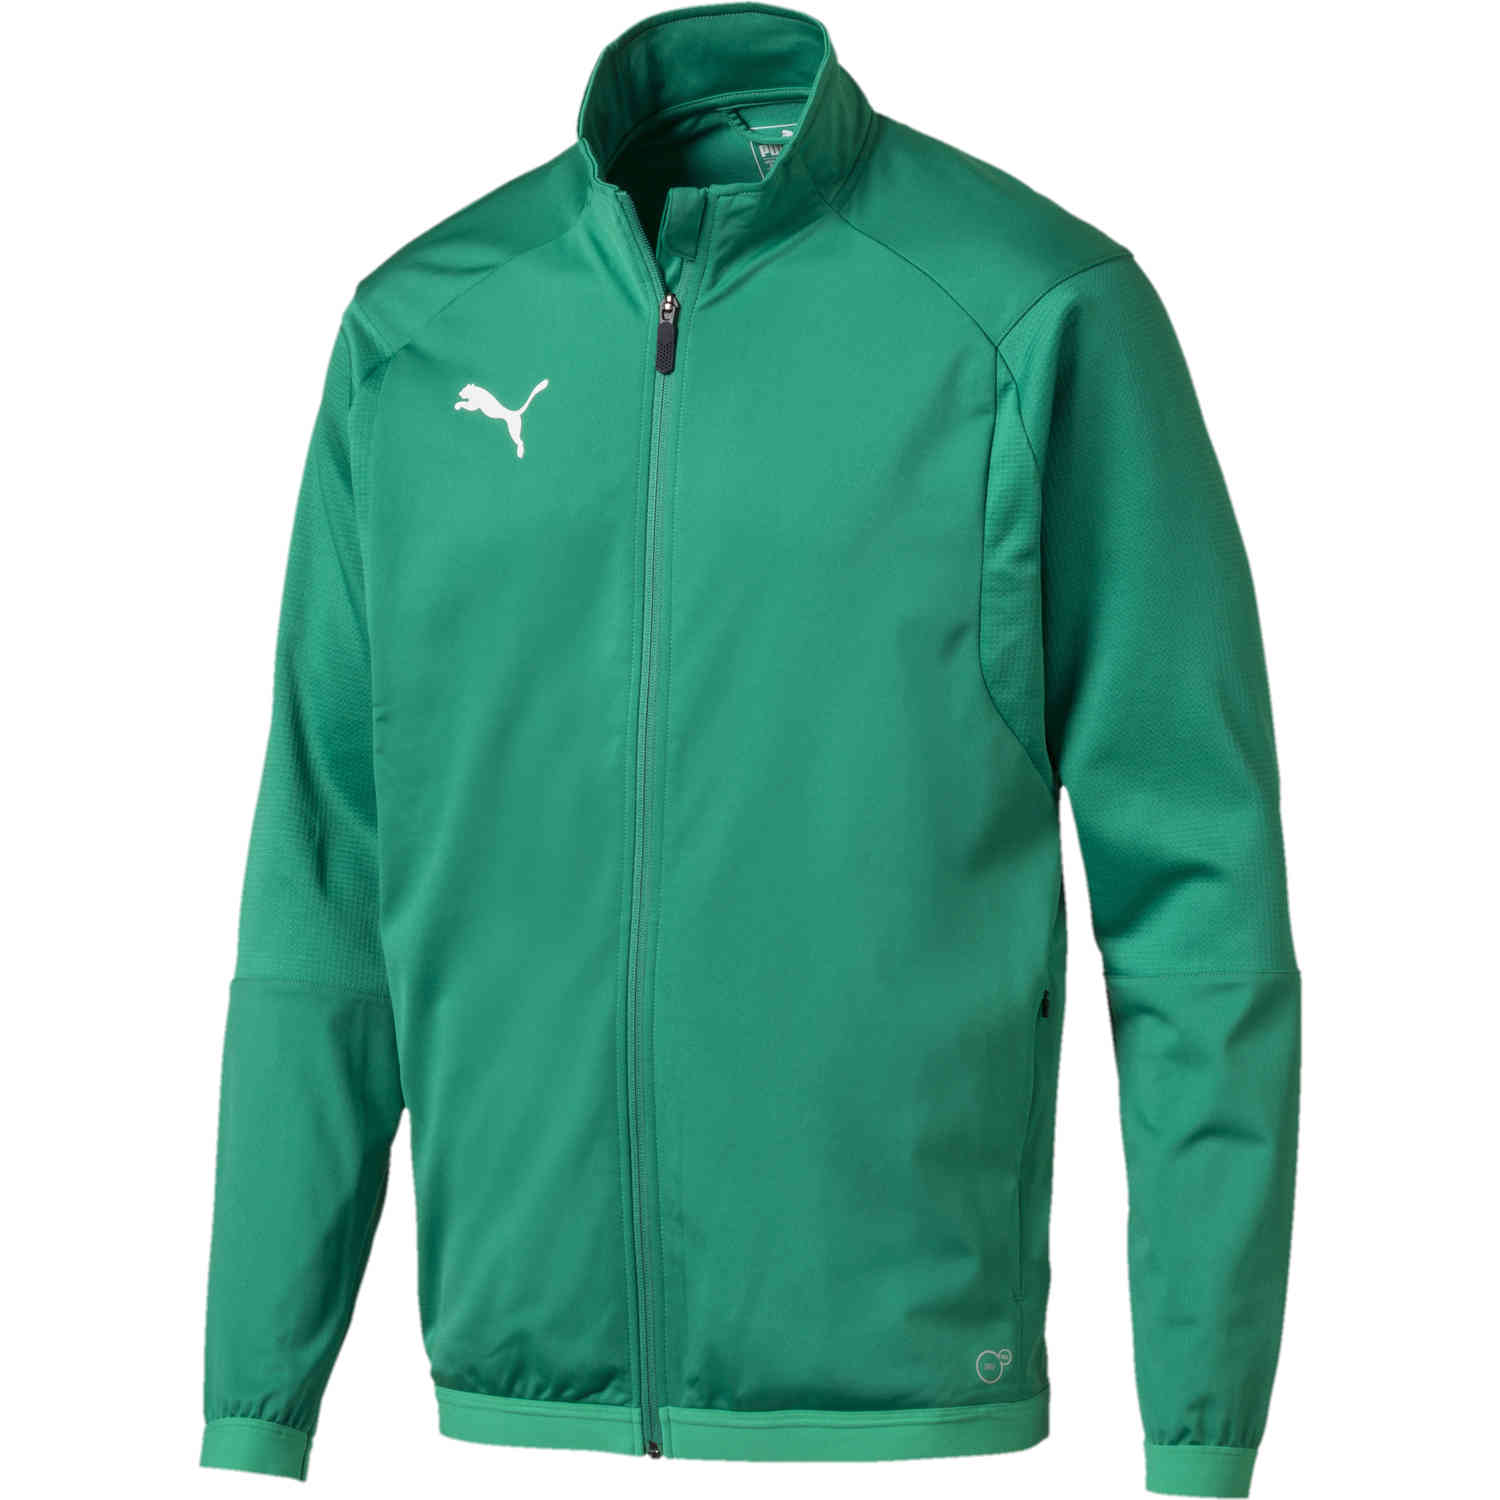 Puma Liga Training Jacket - Pepper Green - SoccerPro